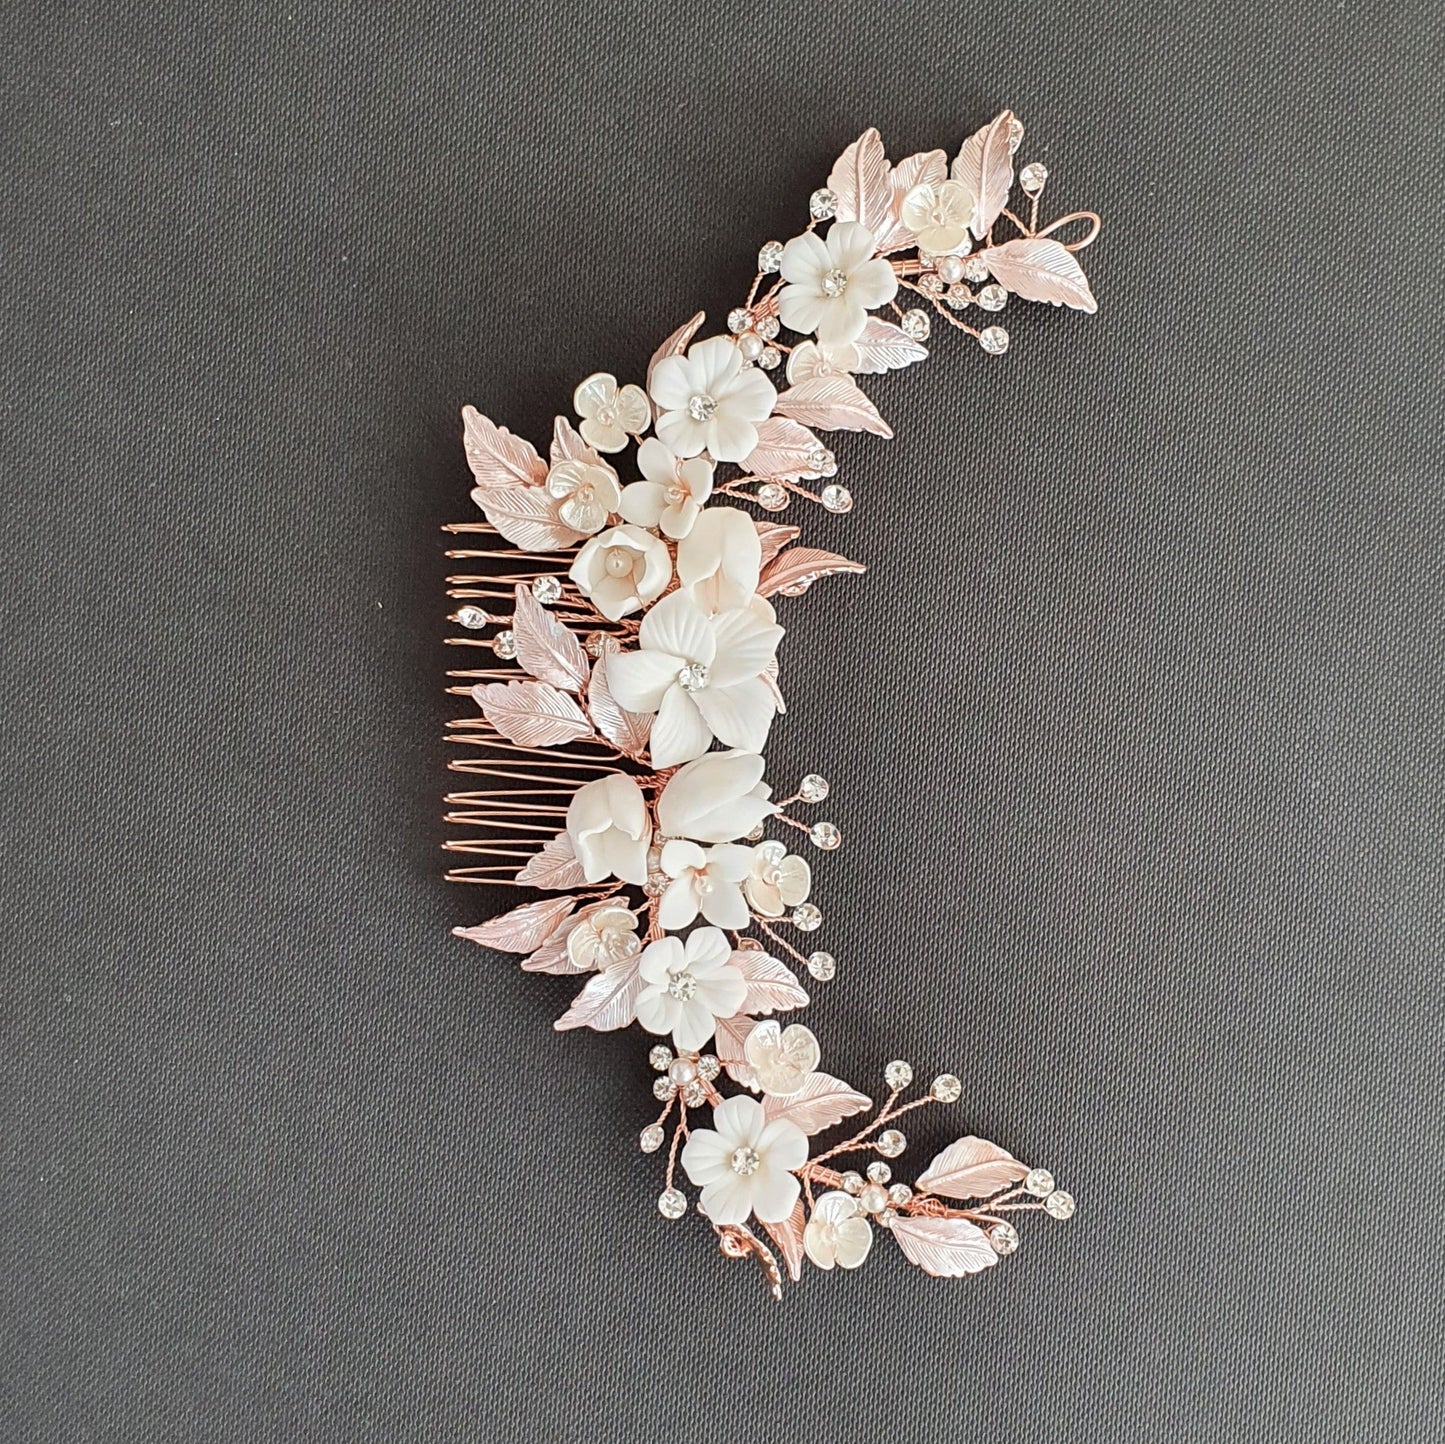 Peigne à cheveux en or rose avec des fleurs blanches-jonquille